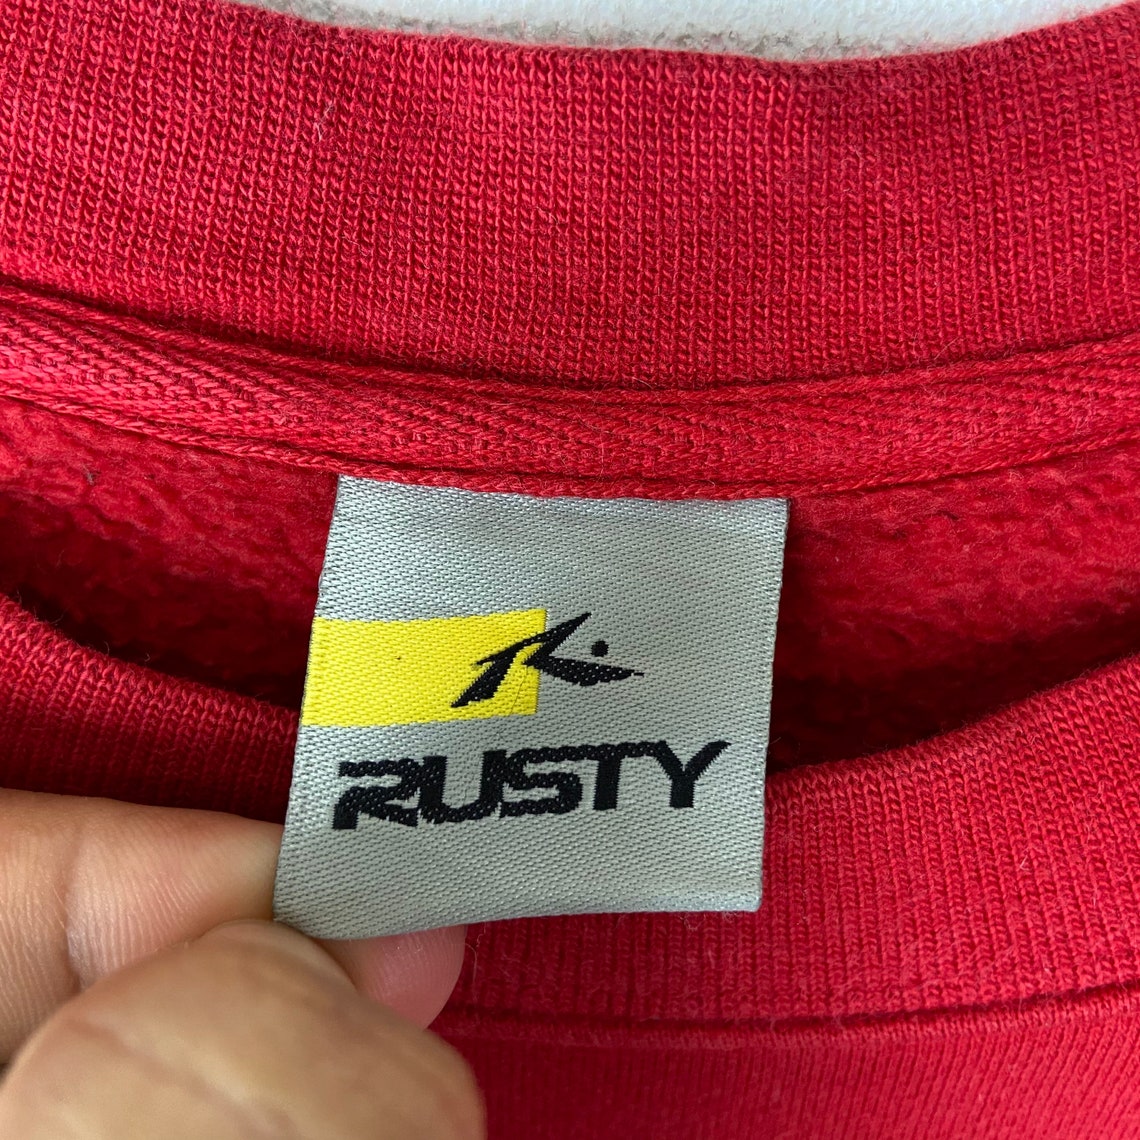 Vintage Rusty Surfboards Sweatshirt Big Logo Red Color | Etsy